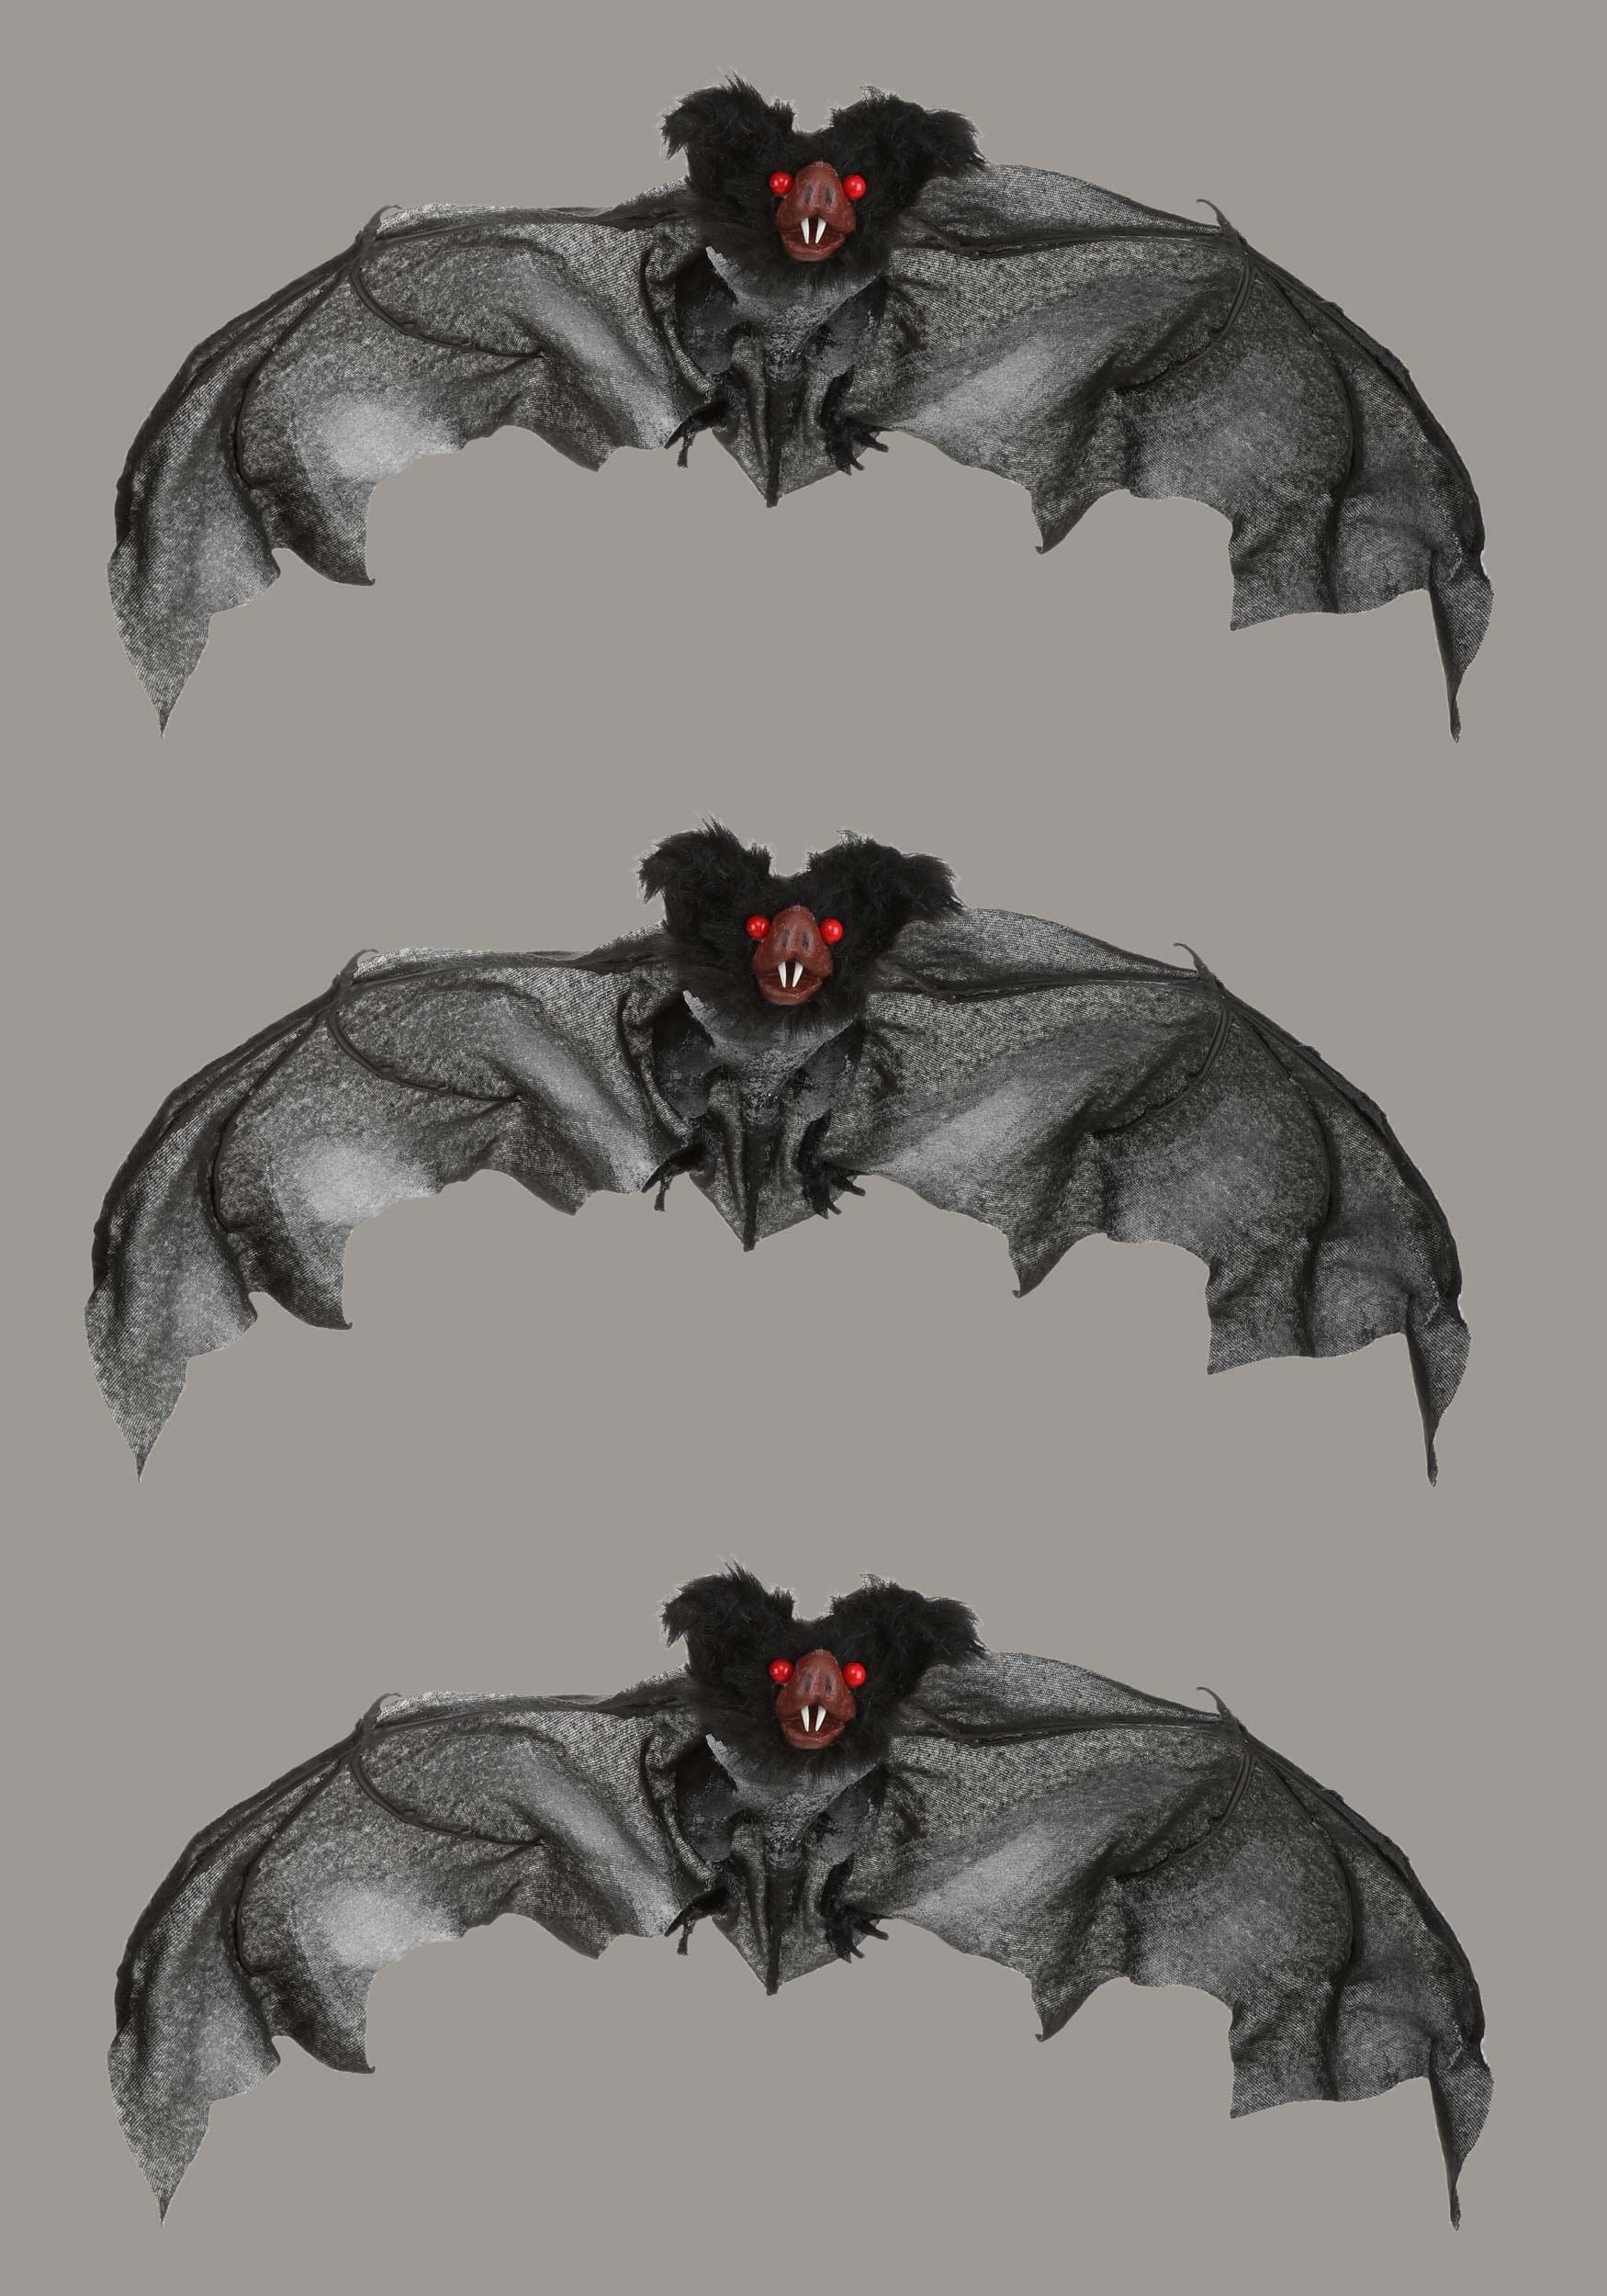 3-pack Black Bat , Bat Decorations